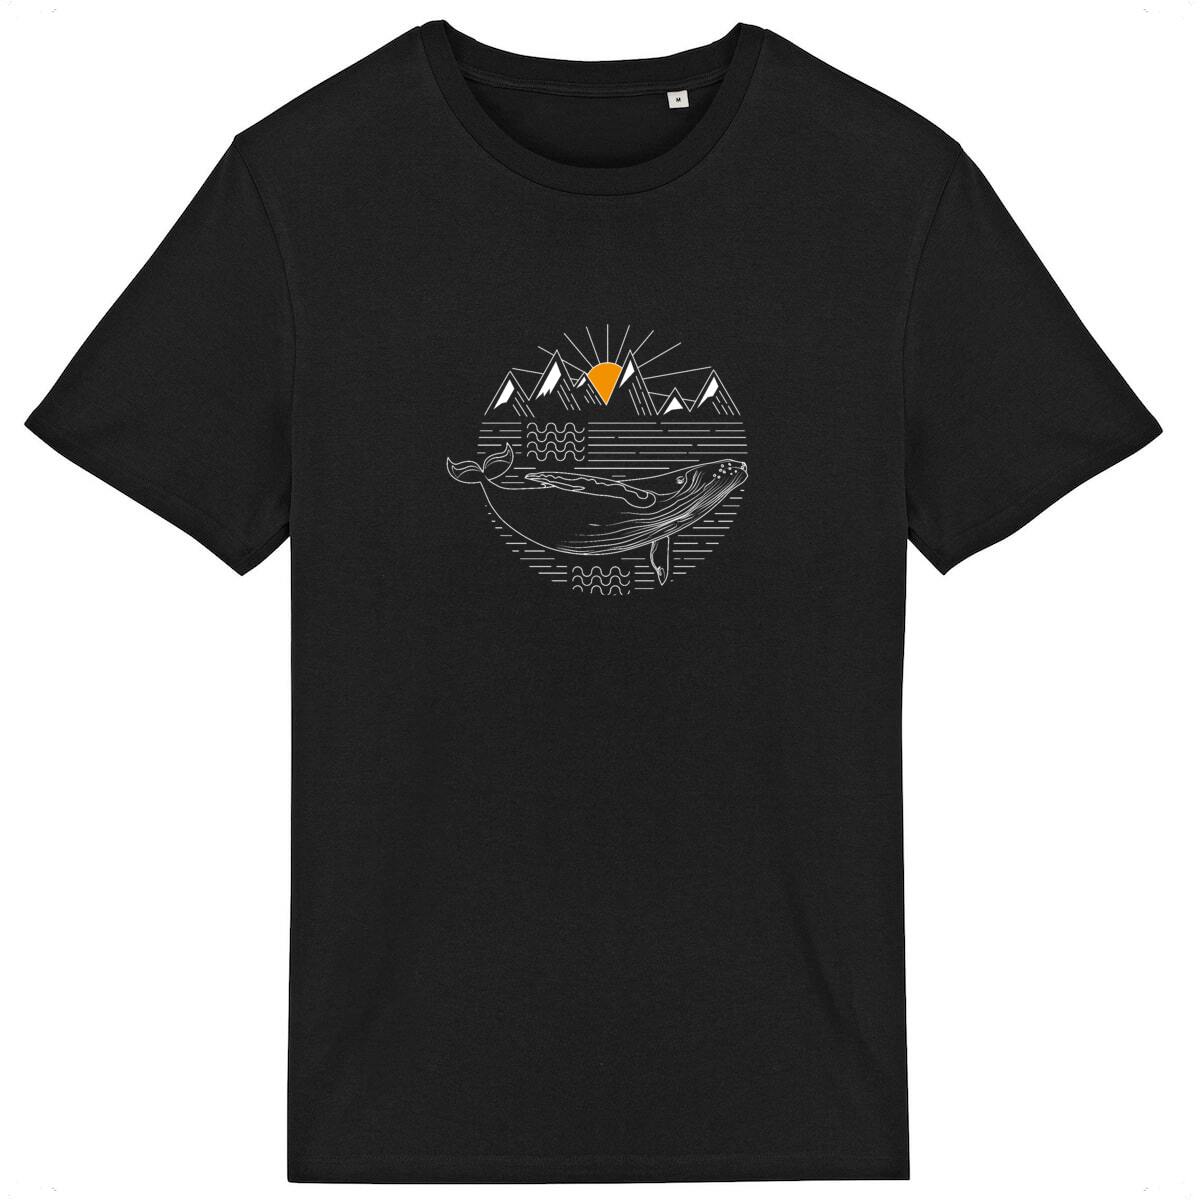 Impression de baleine éco-responsable sur t-shirt durable